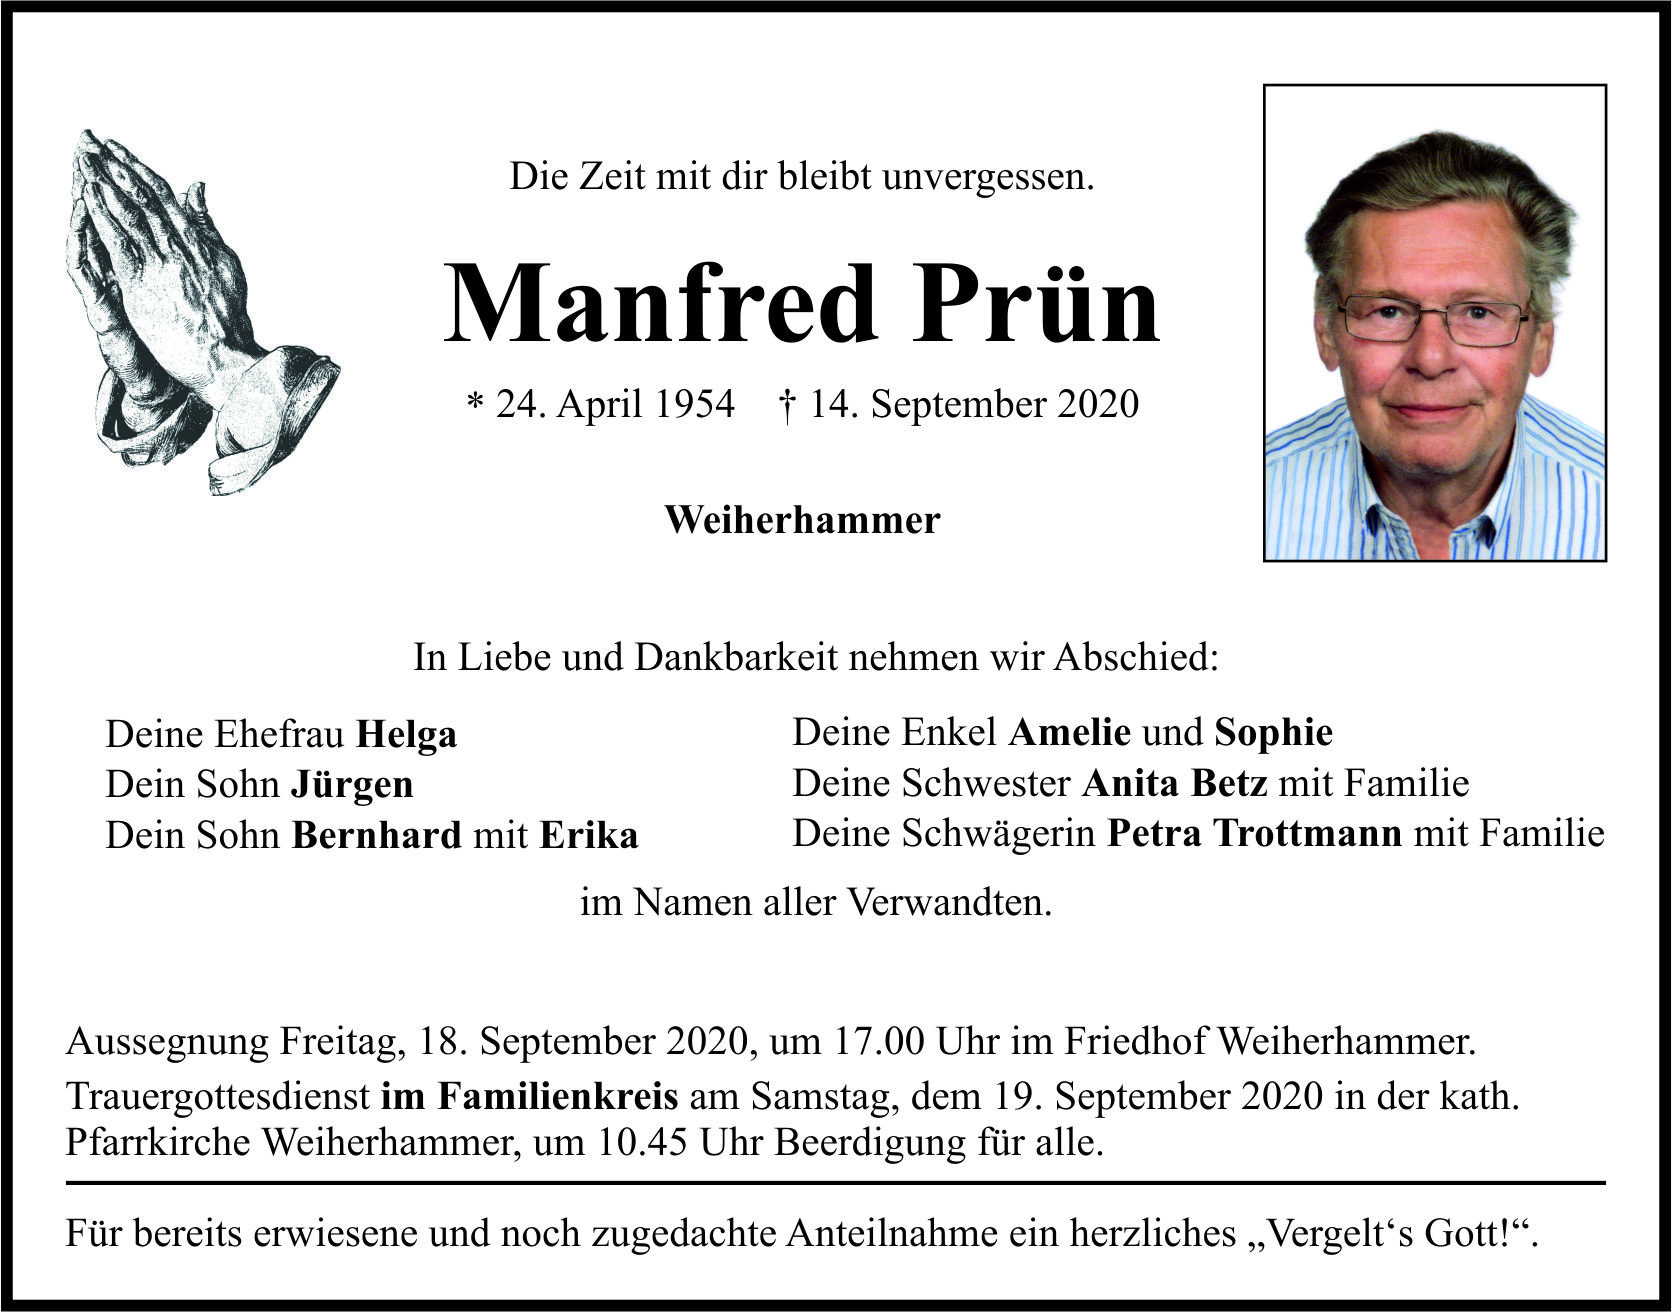 Traueranzeige Manfred Prün, Weiherhammer